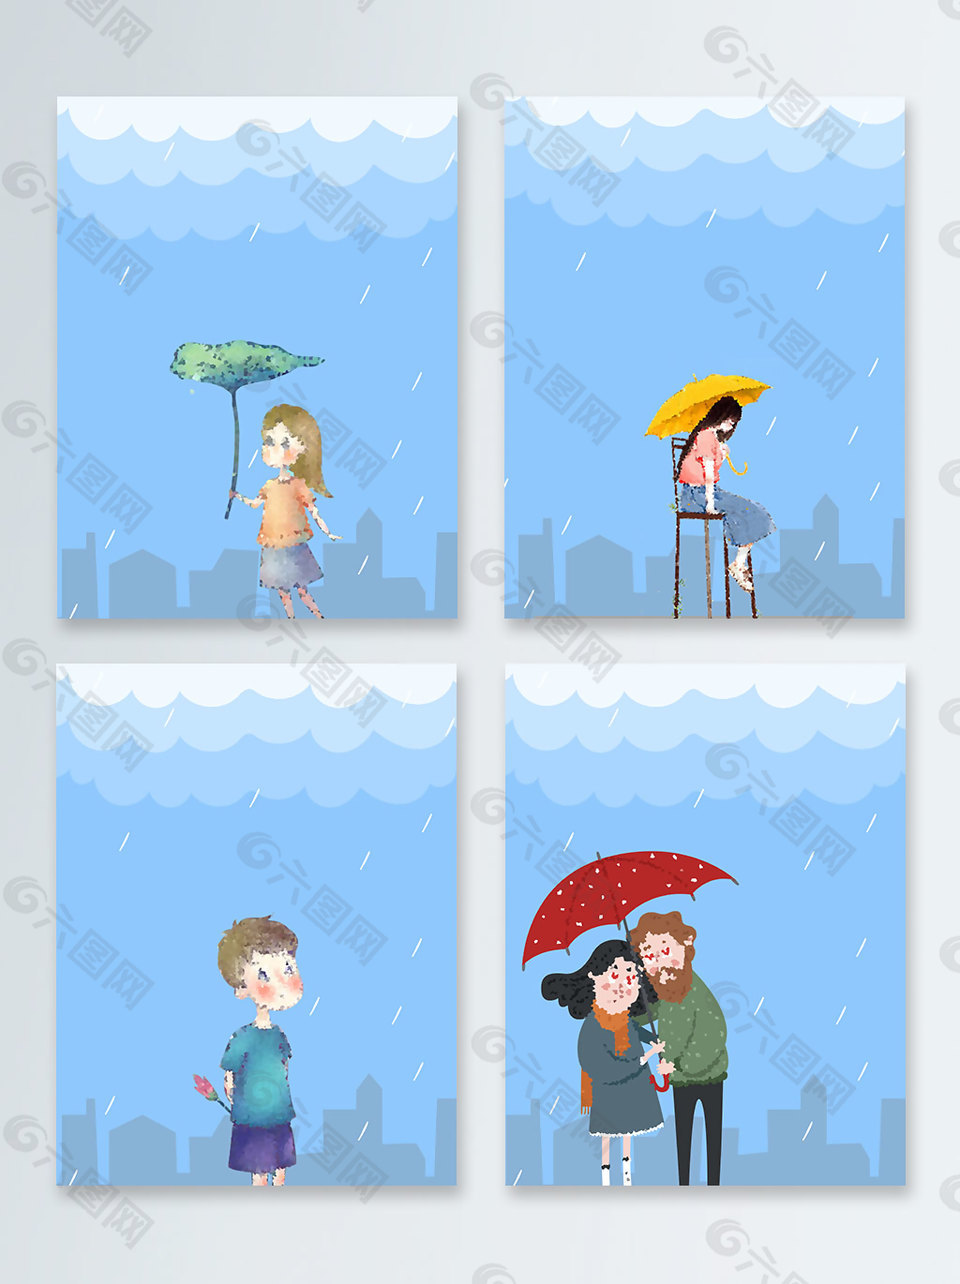 卡通手绘雨中的人物人物童趣广告背景